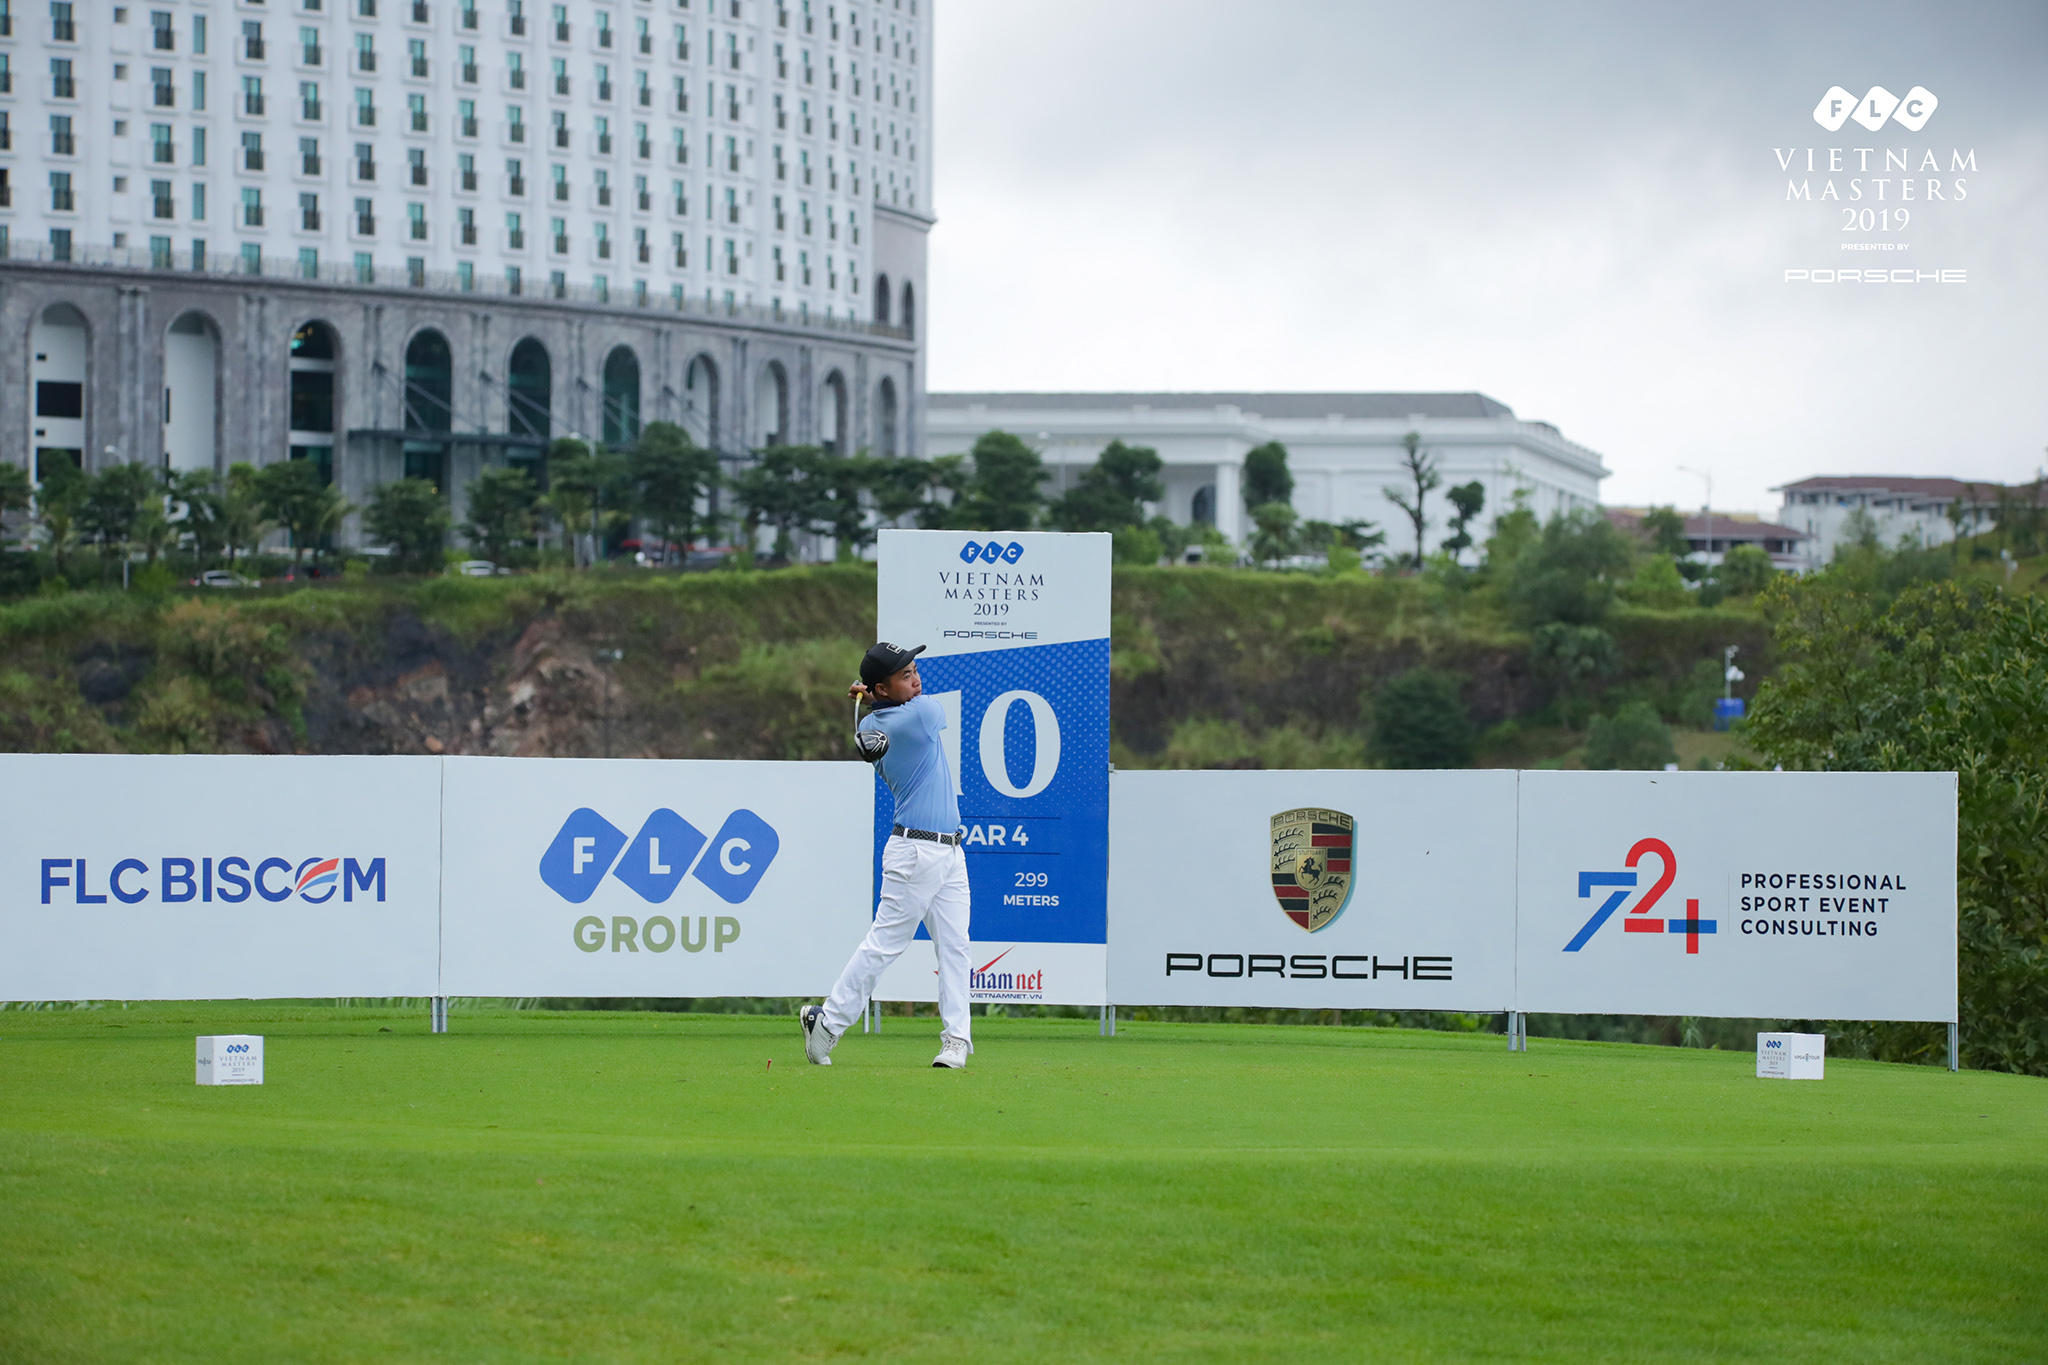 Xem thành tích của các golfer tuyển chuyên nghiệp Bắc – Nam tại FLC Vietnam Masters 2019 Presented by Porsche